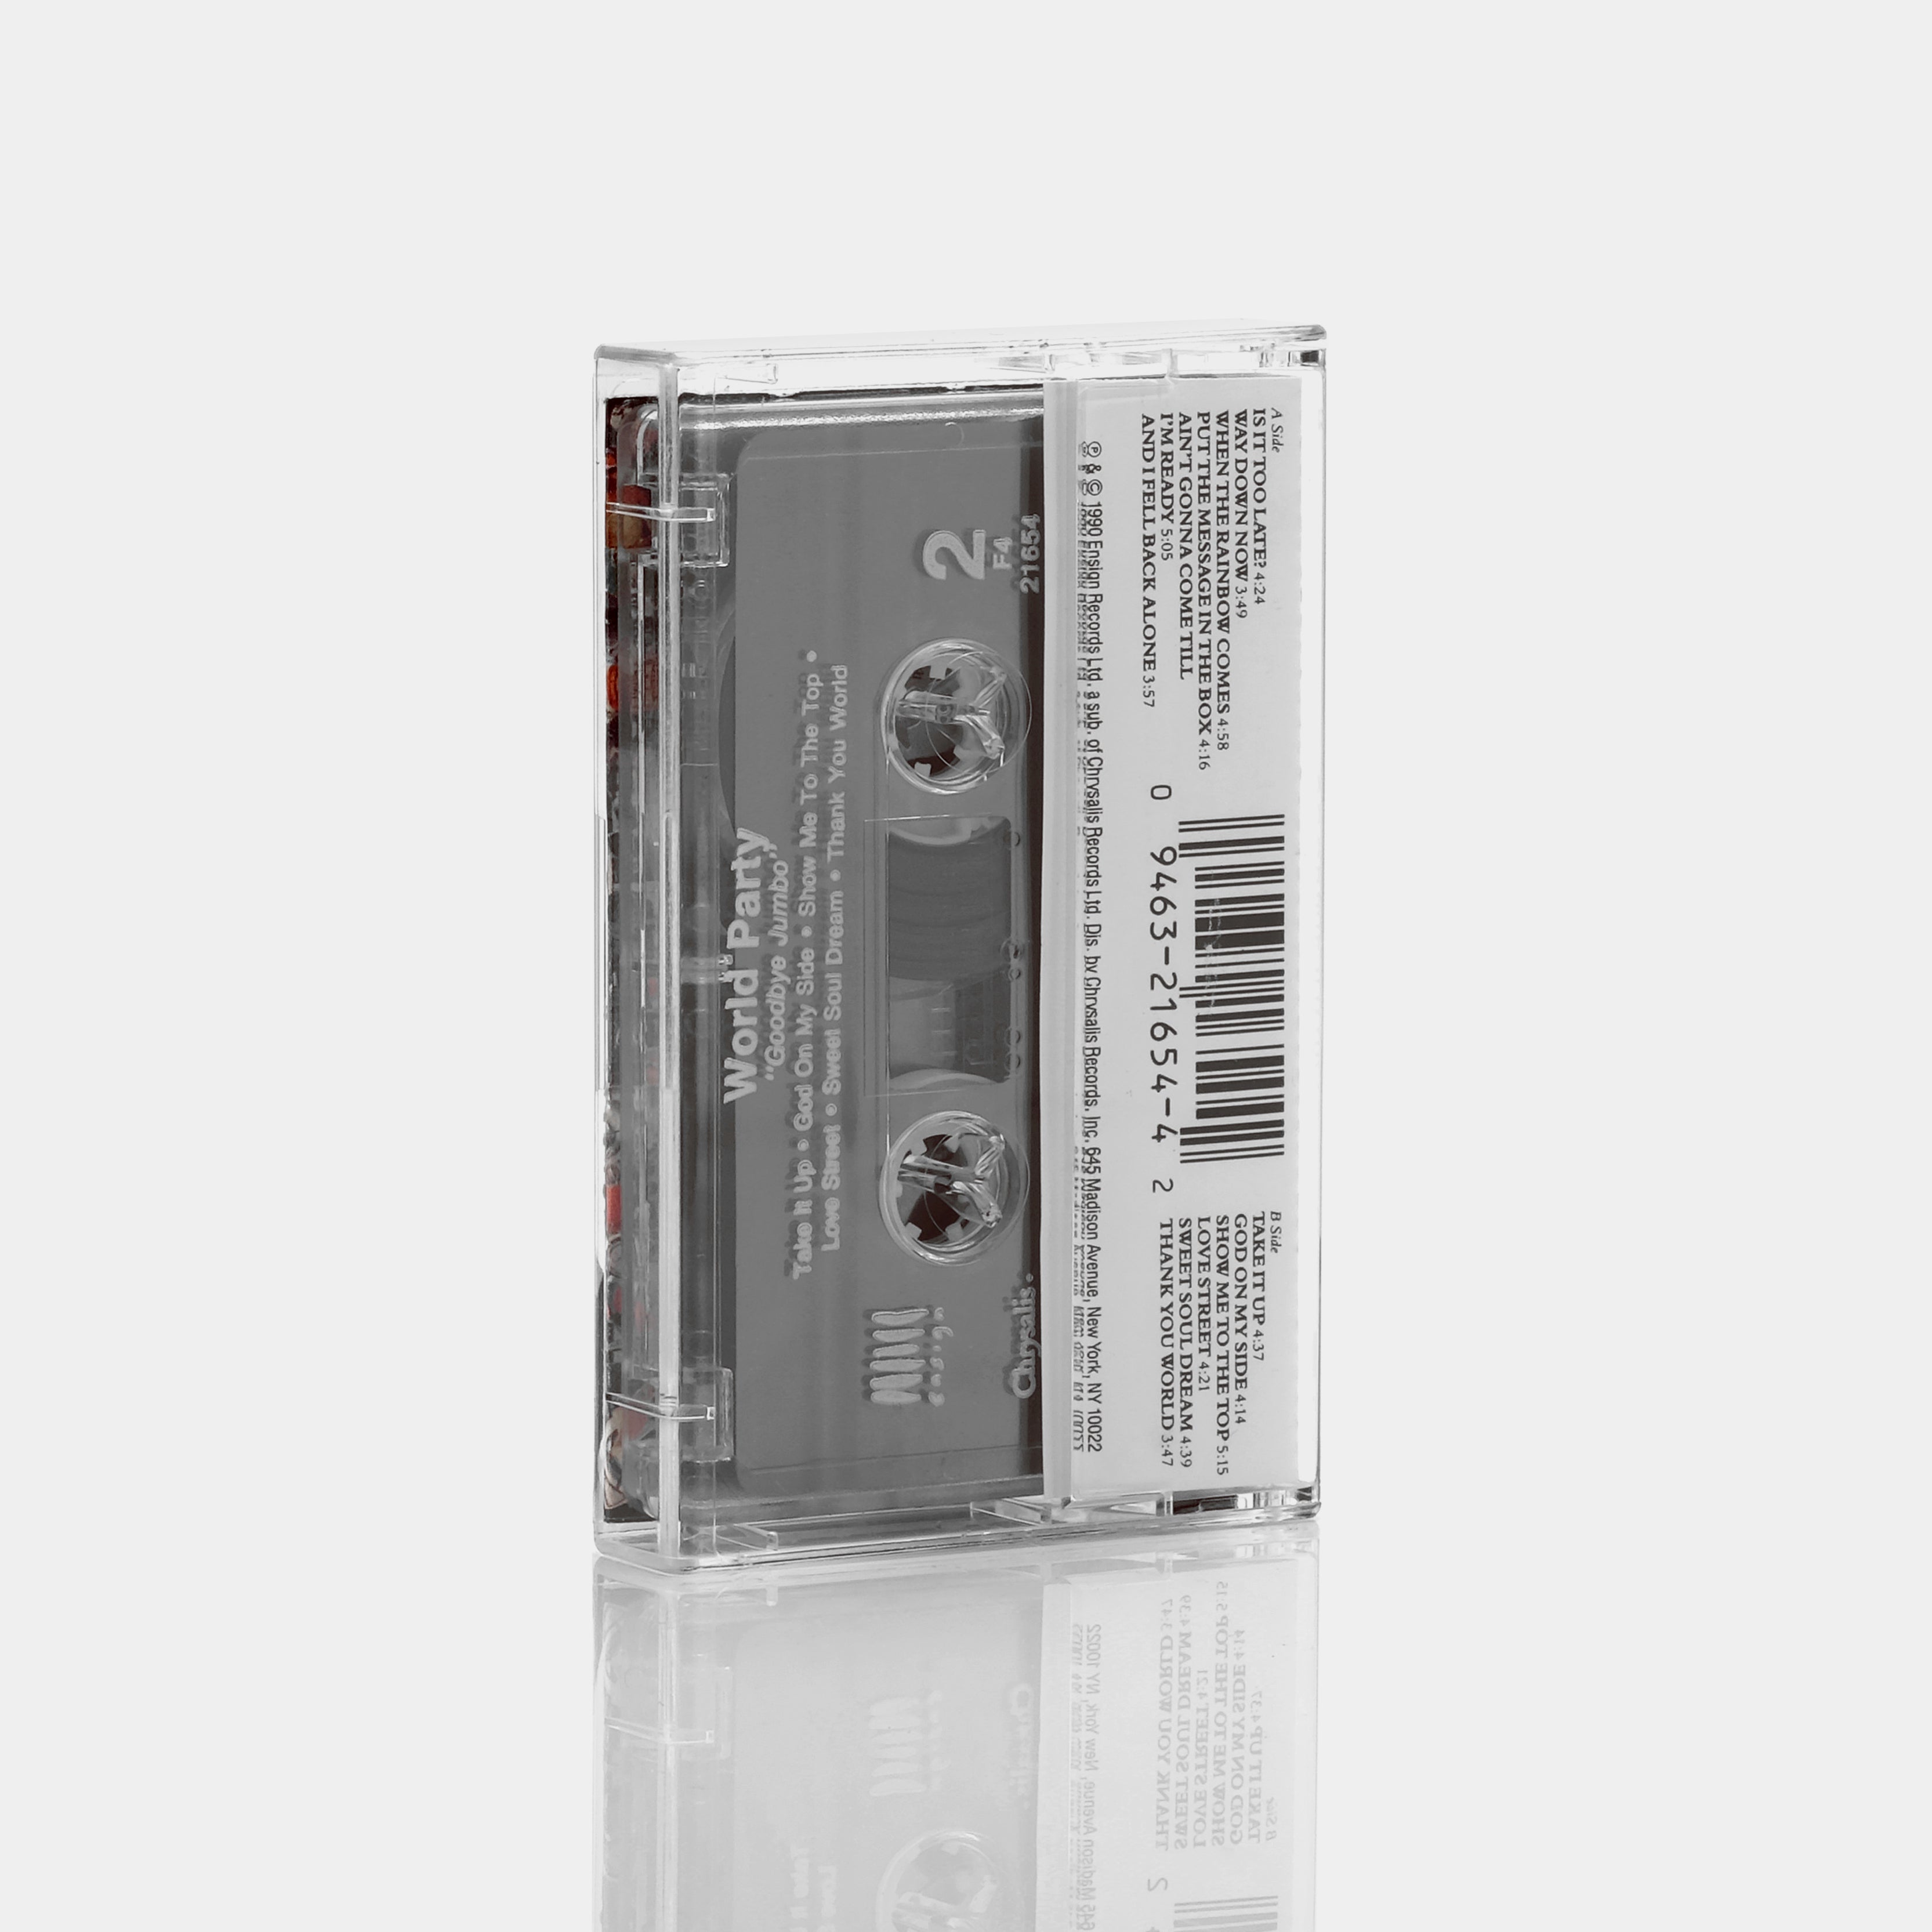 World Party - Goodbye Jumbo Cassette Tape